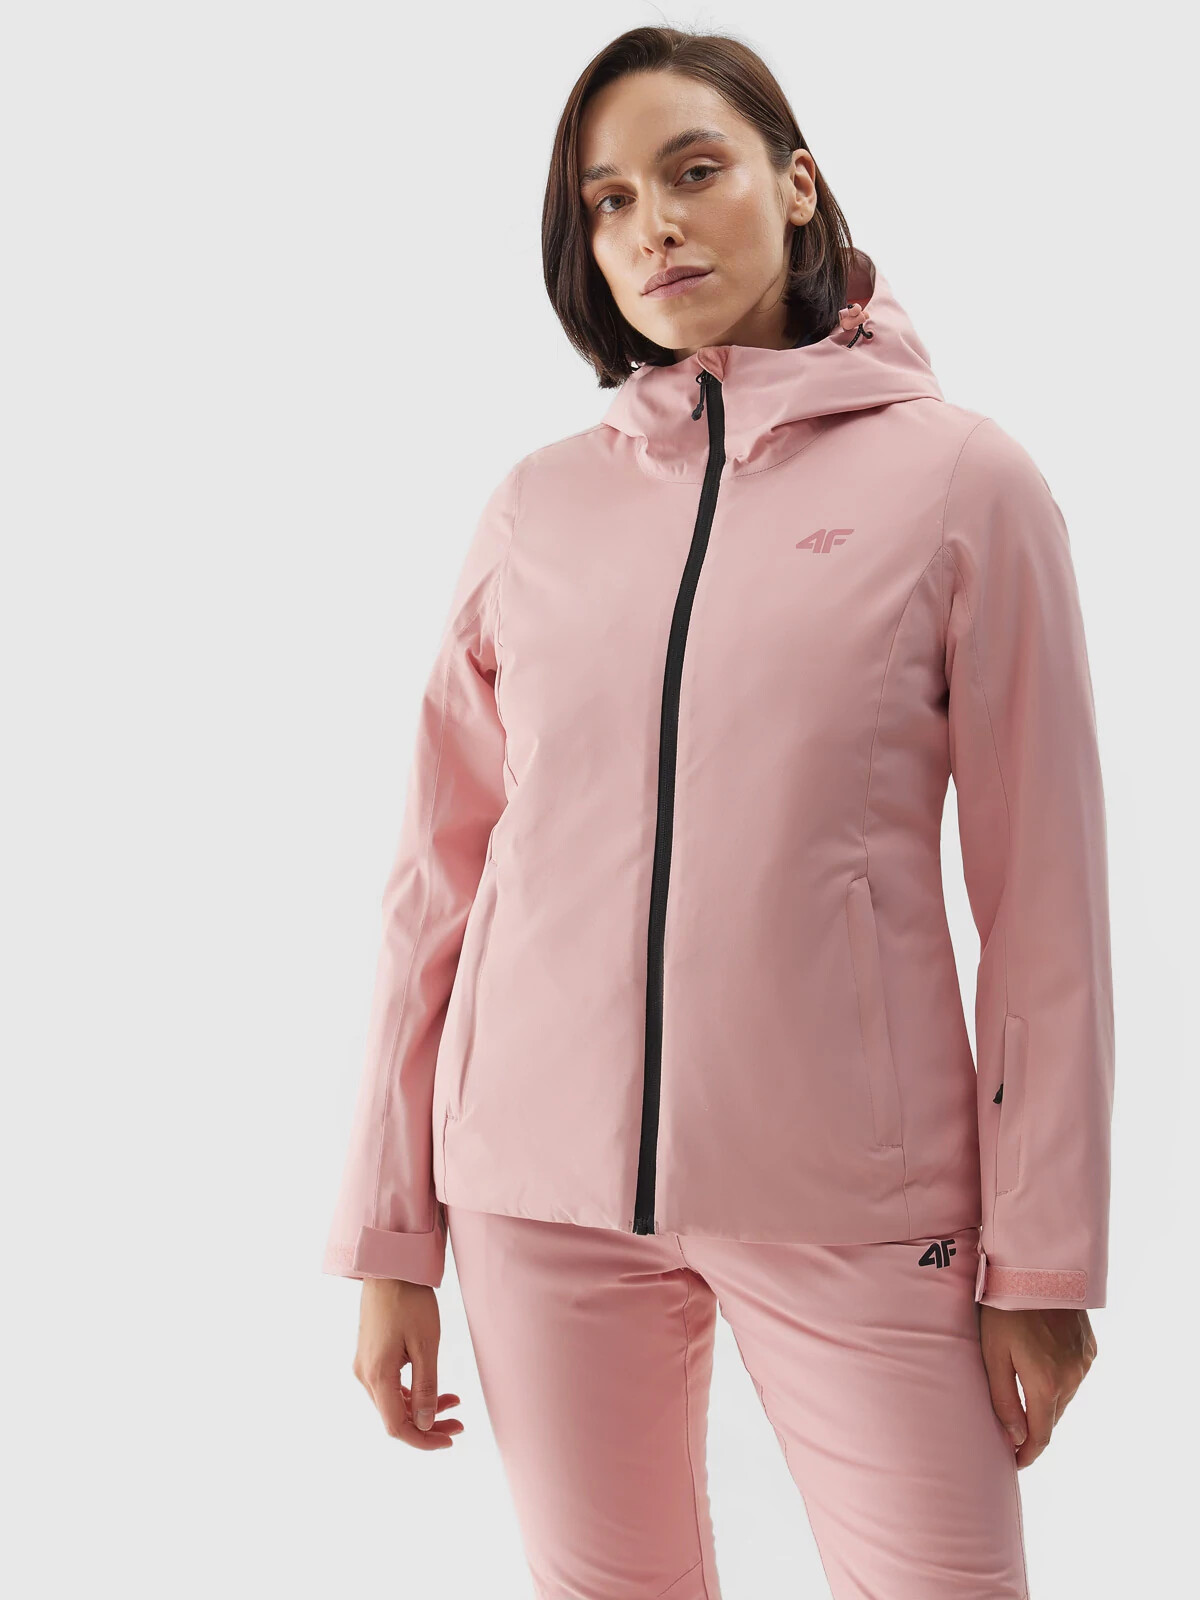 Dámská lyžařská bunda membrána 5000 4FAW23TJACF120-56S světle růžová - 4F XL